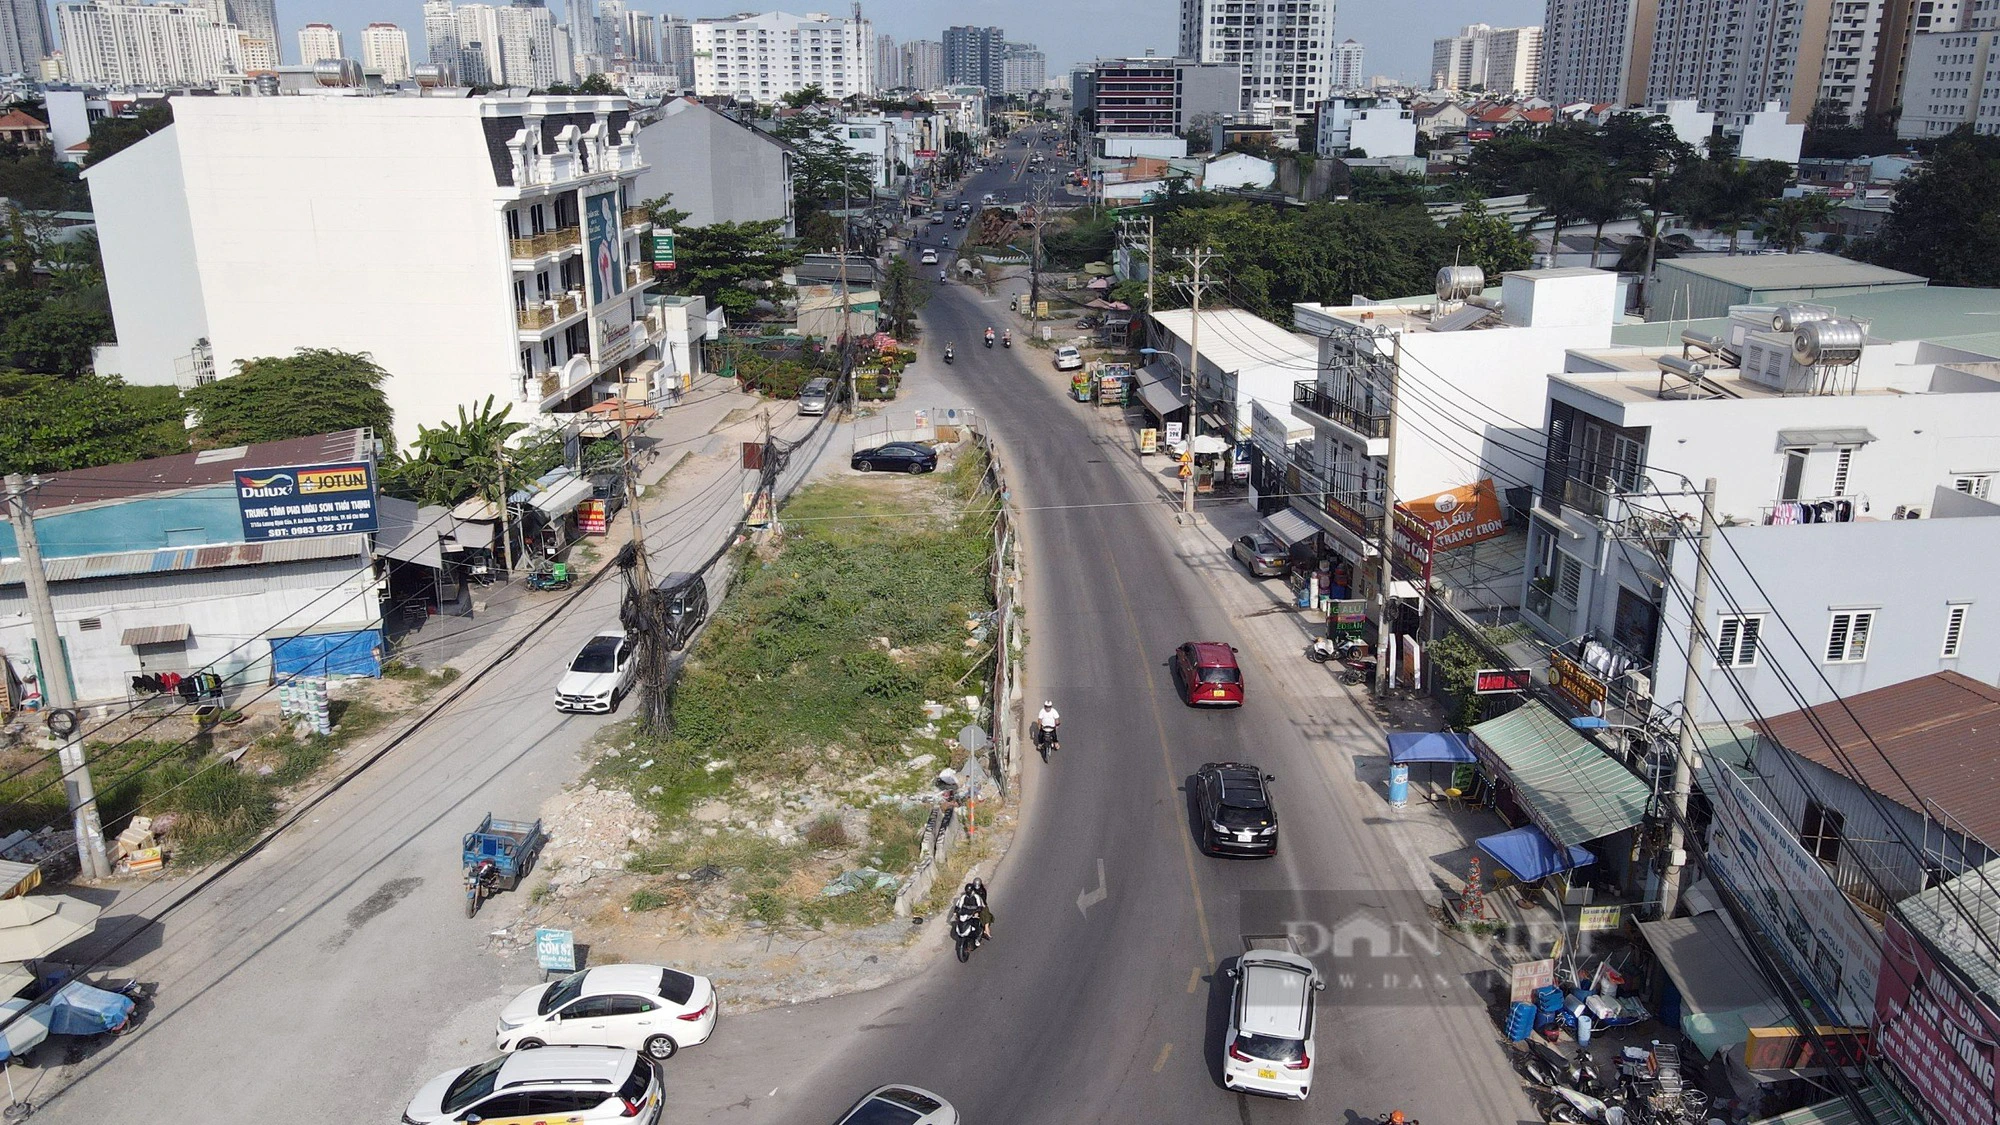 Hơn 8 năm chưa mở rộng xong 2,5km đường Lương Định Của, dự án tiếp tục “chôn chân” chờ mặt bằng - Ảnh 1.